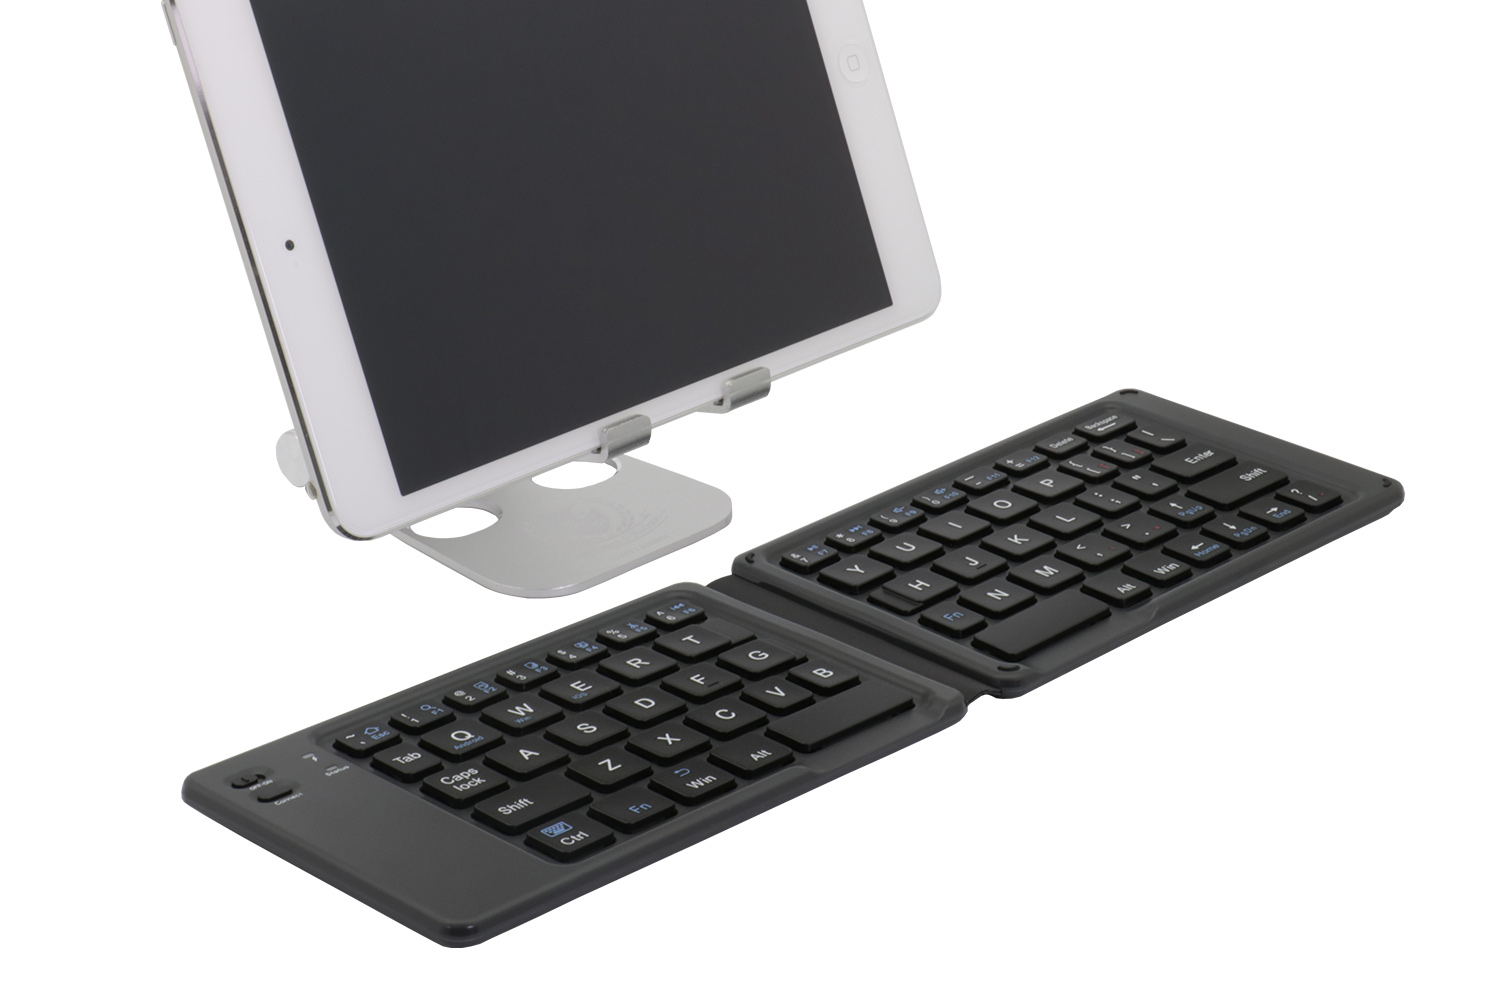 厚さ7mmの折りたたみ式ワイヤレスキーボード「OWL-BTKB6501」をオウルテックが発売